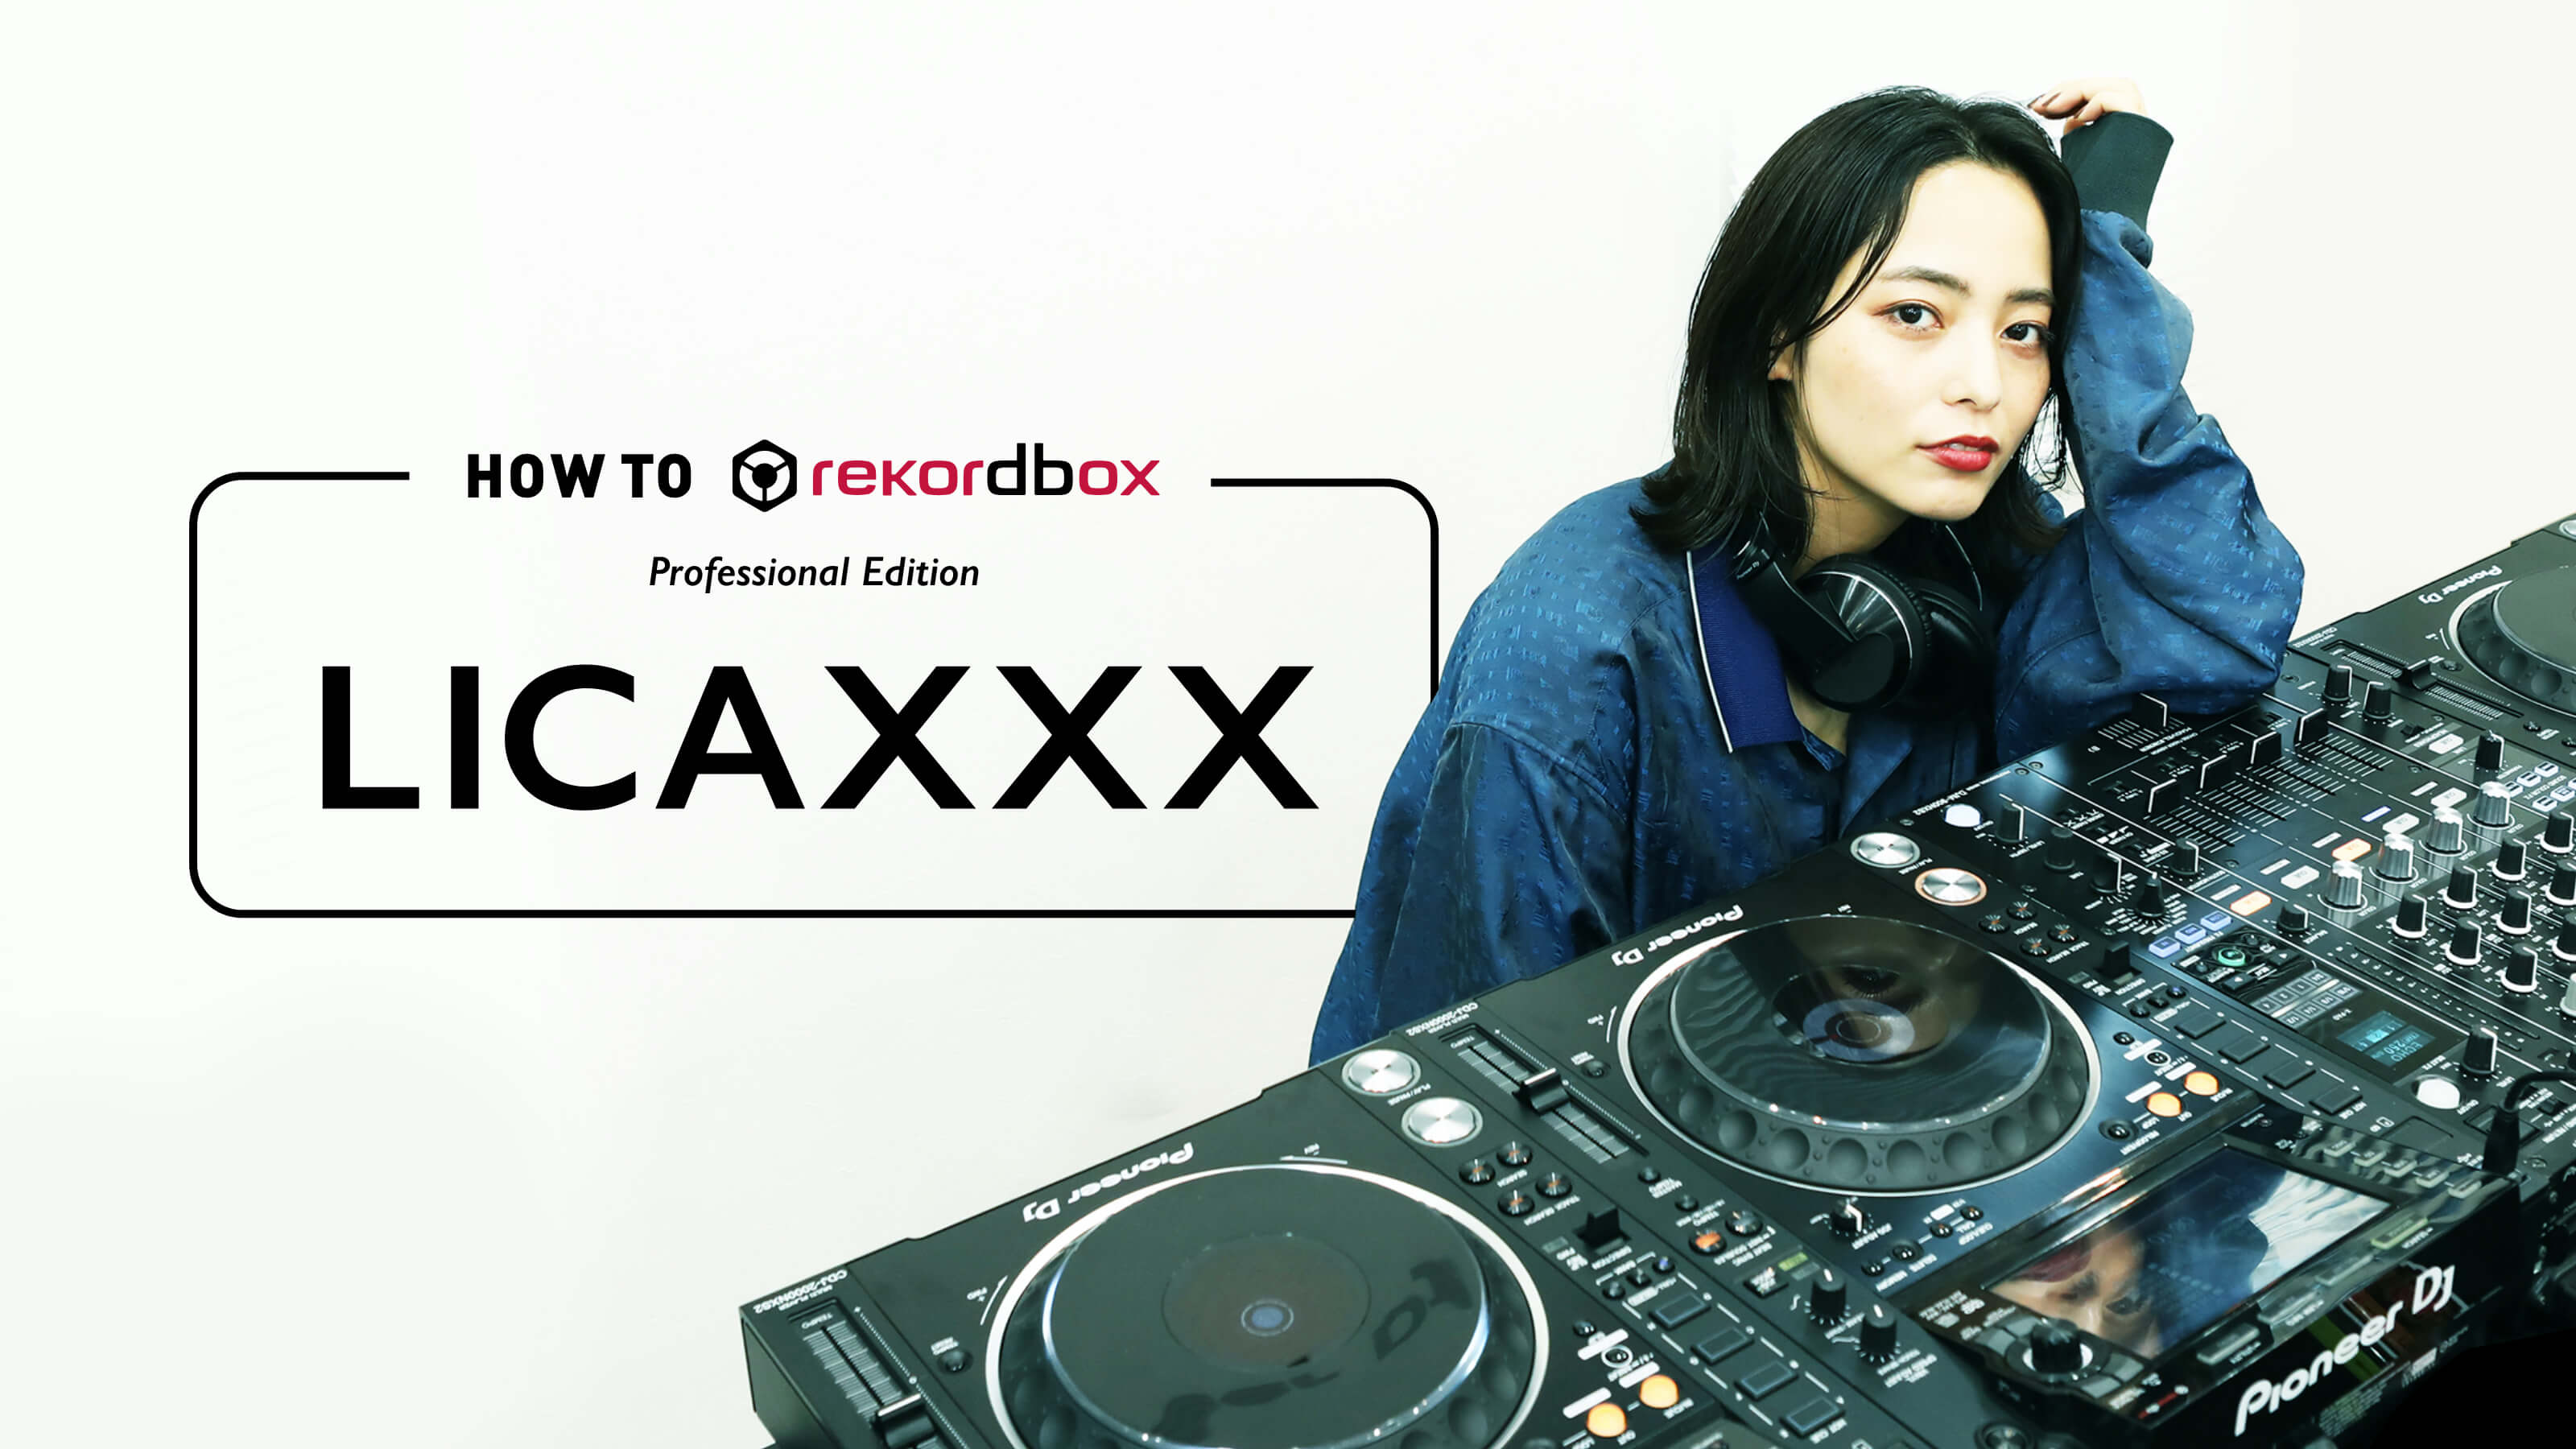 Licaxxx - HOW TO rekordbox